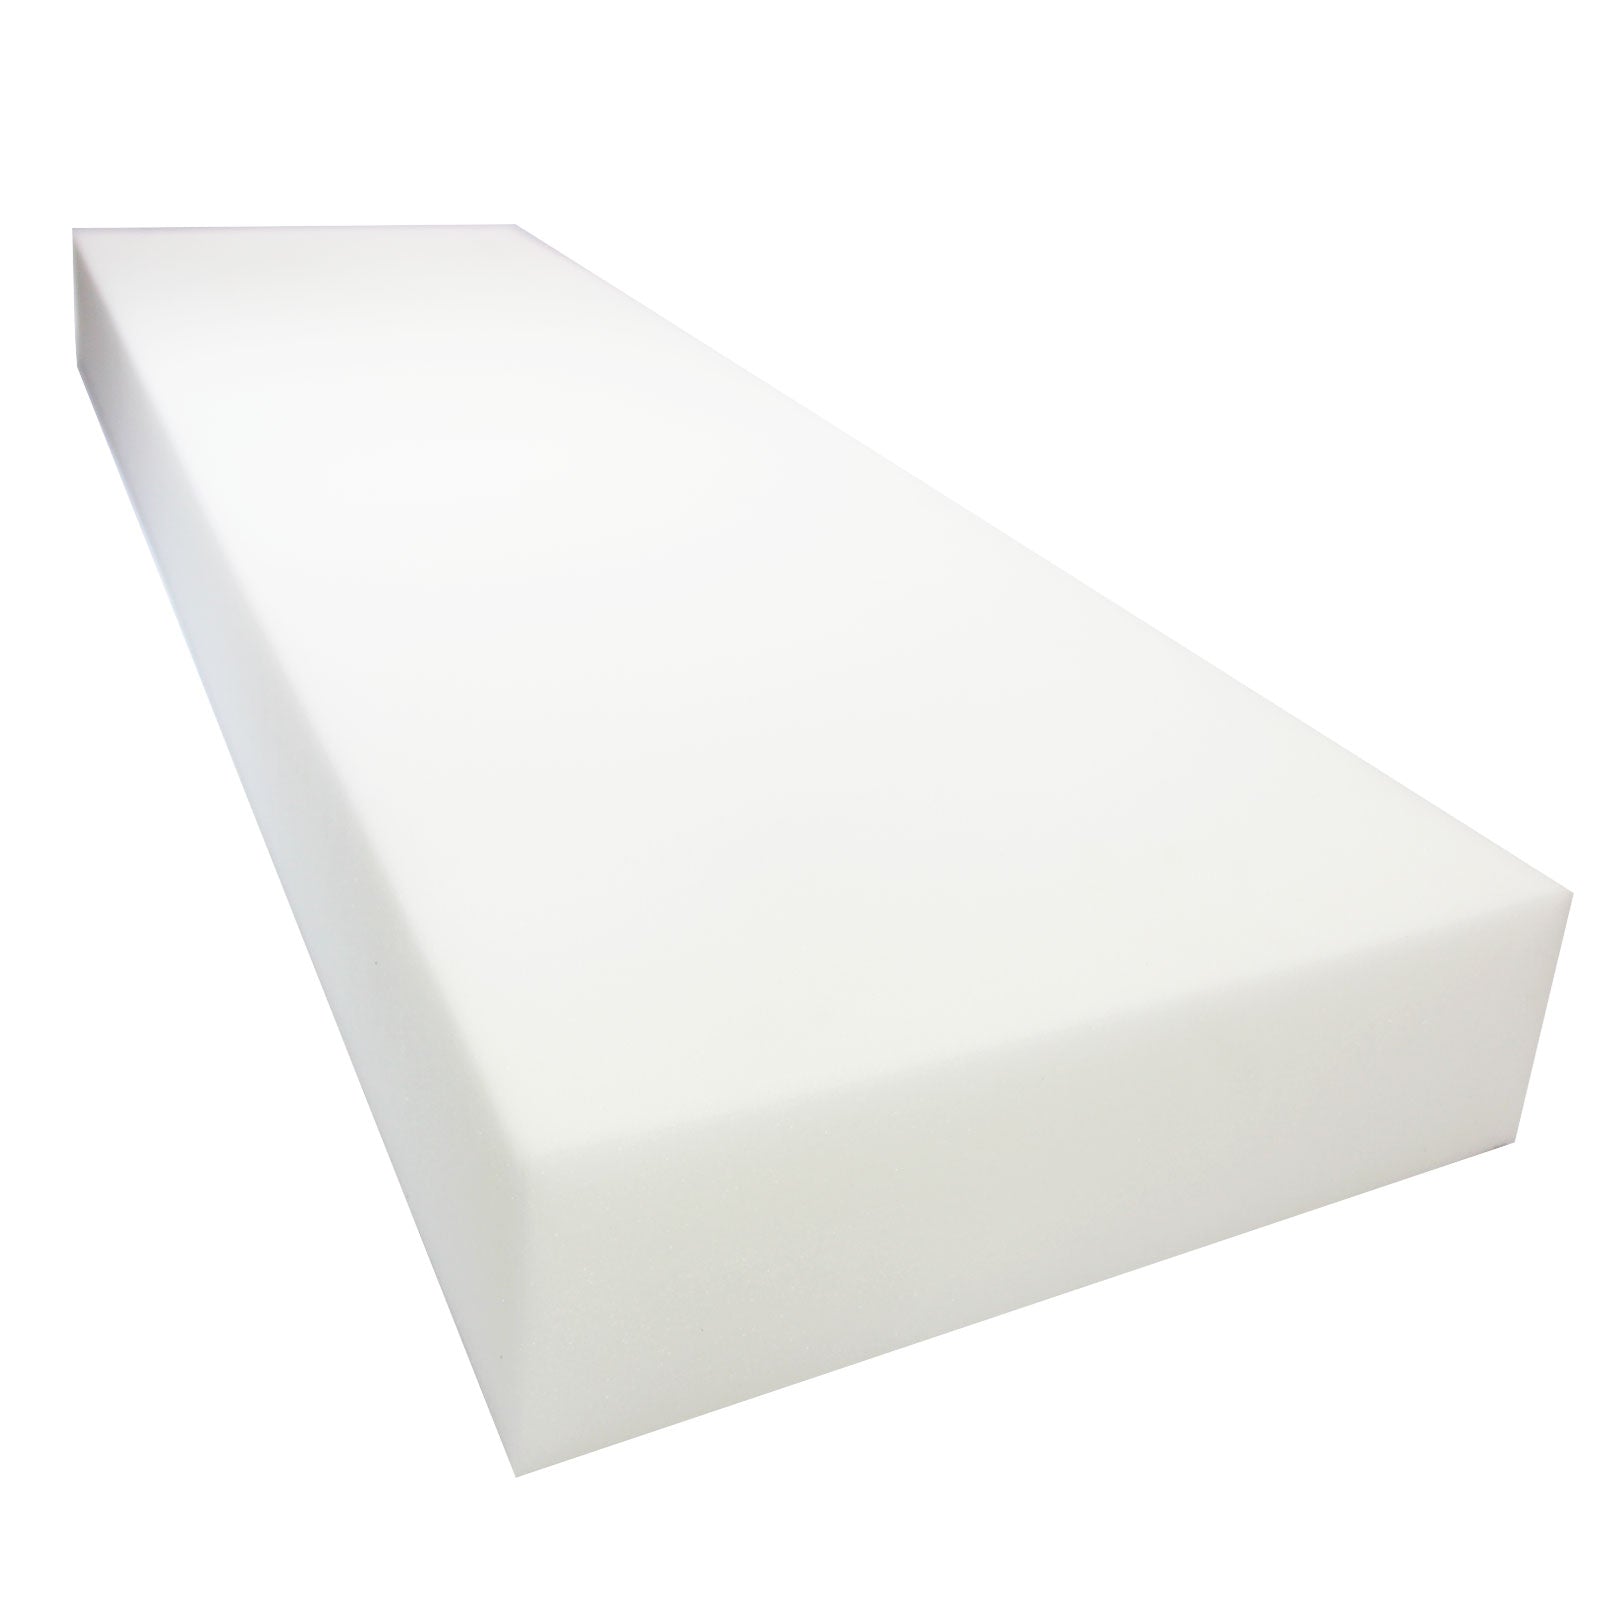 HR-2245 High Resilient Medium Firm Cushion Foam (1-2 Sheets)